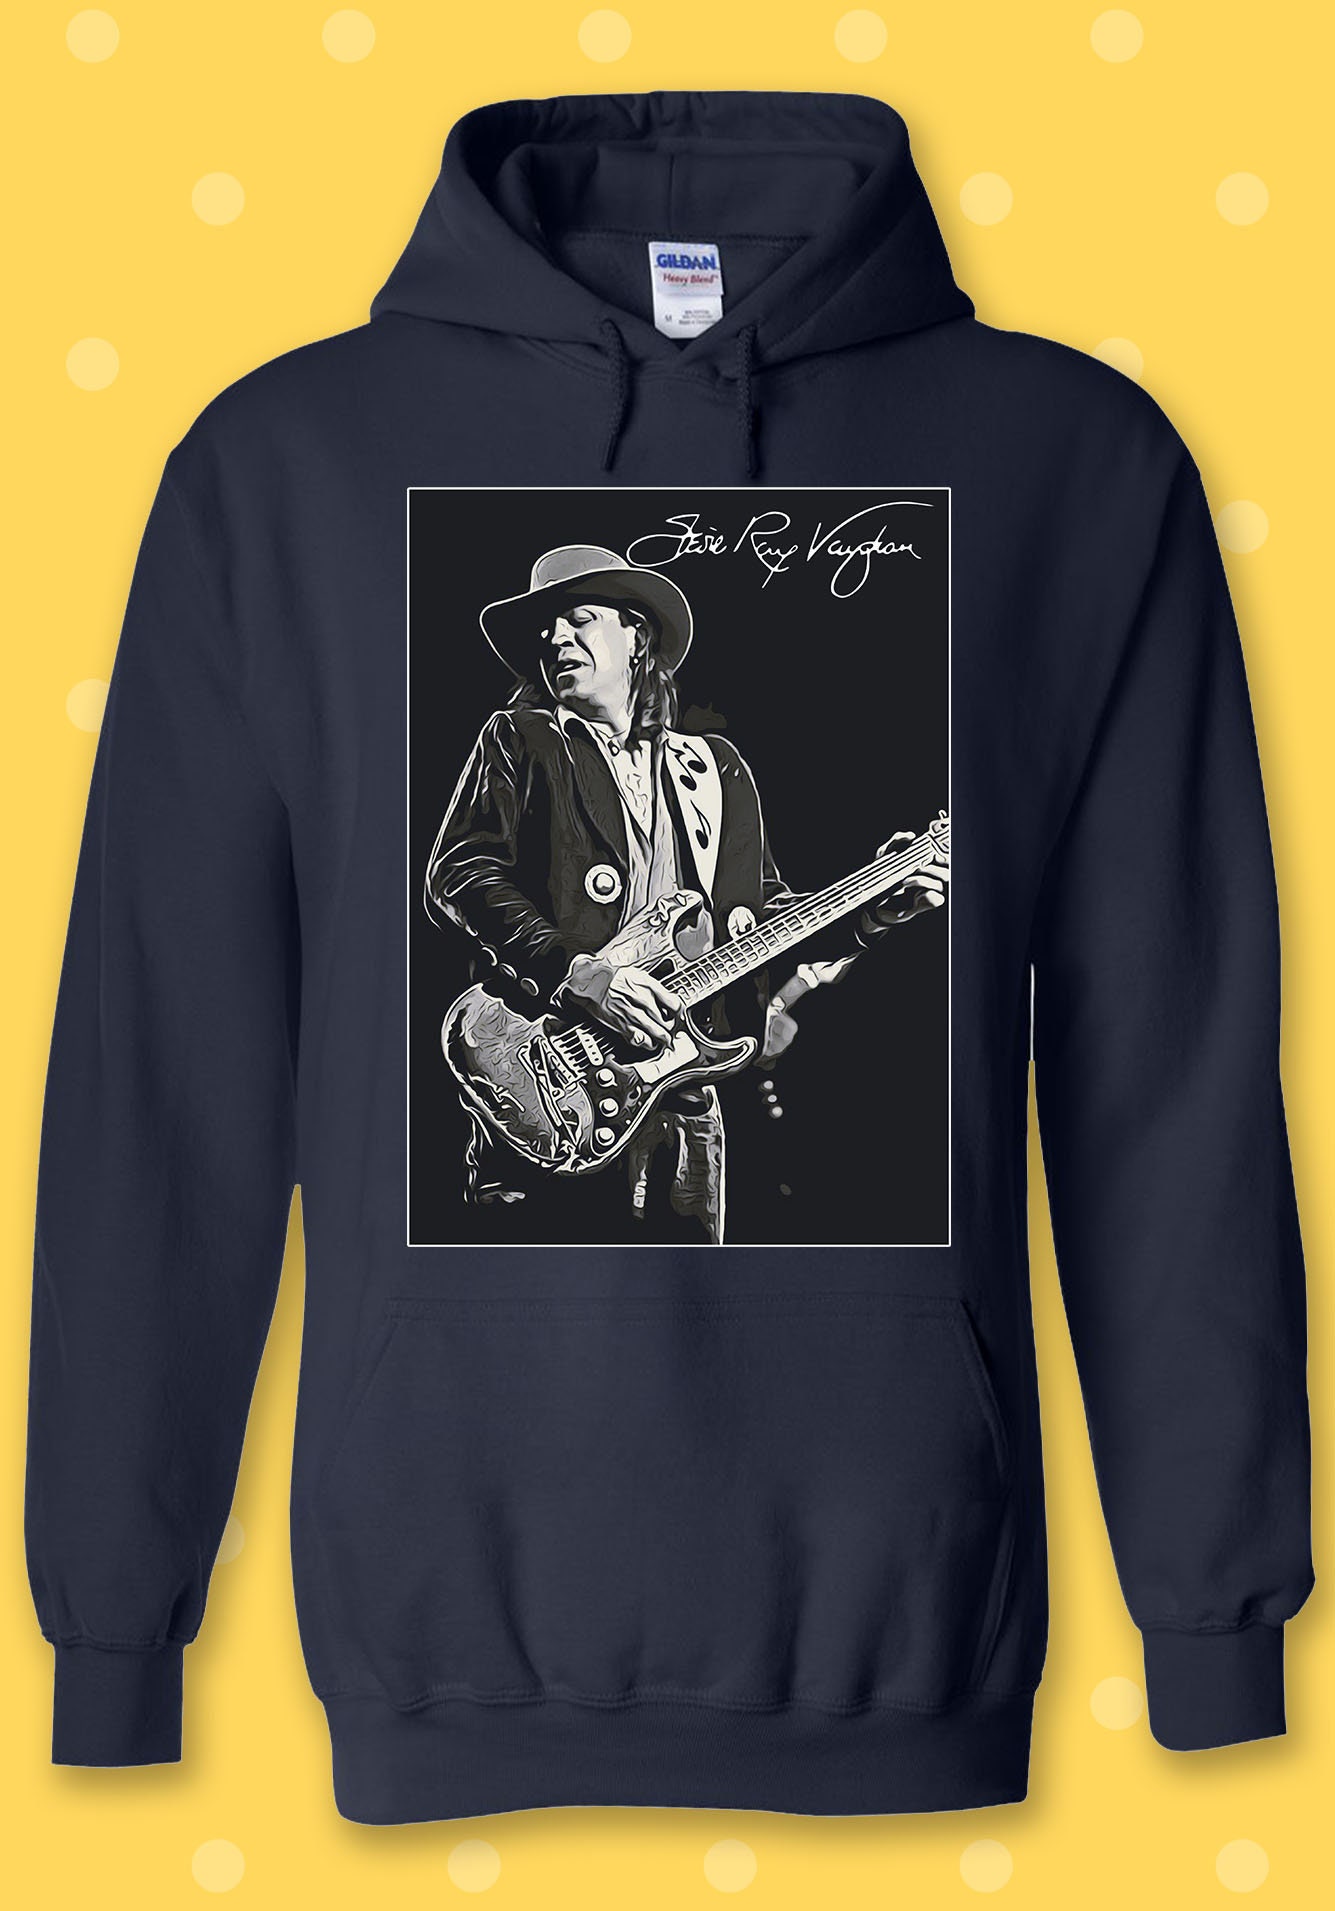 Stevie Ray Vaughan Music Hoodie Sweatshirt Pullover Men Women - Etsy UK